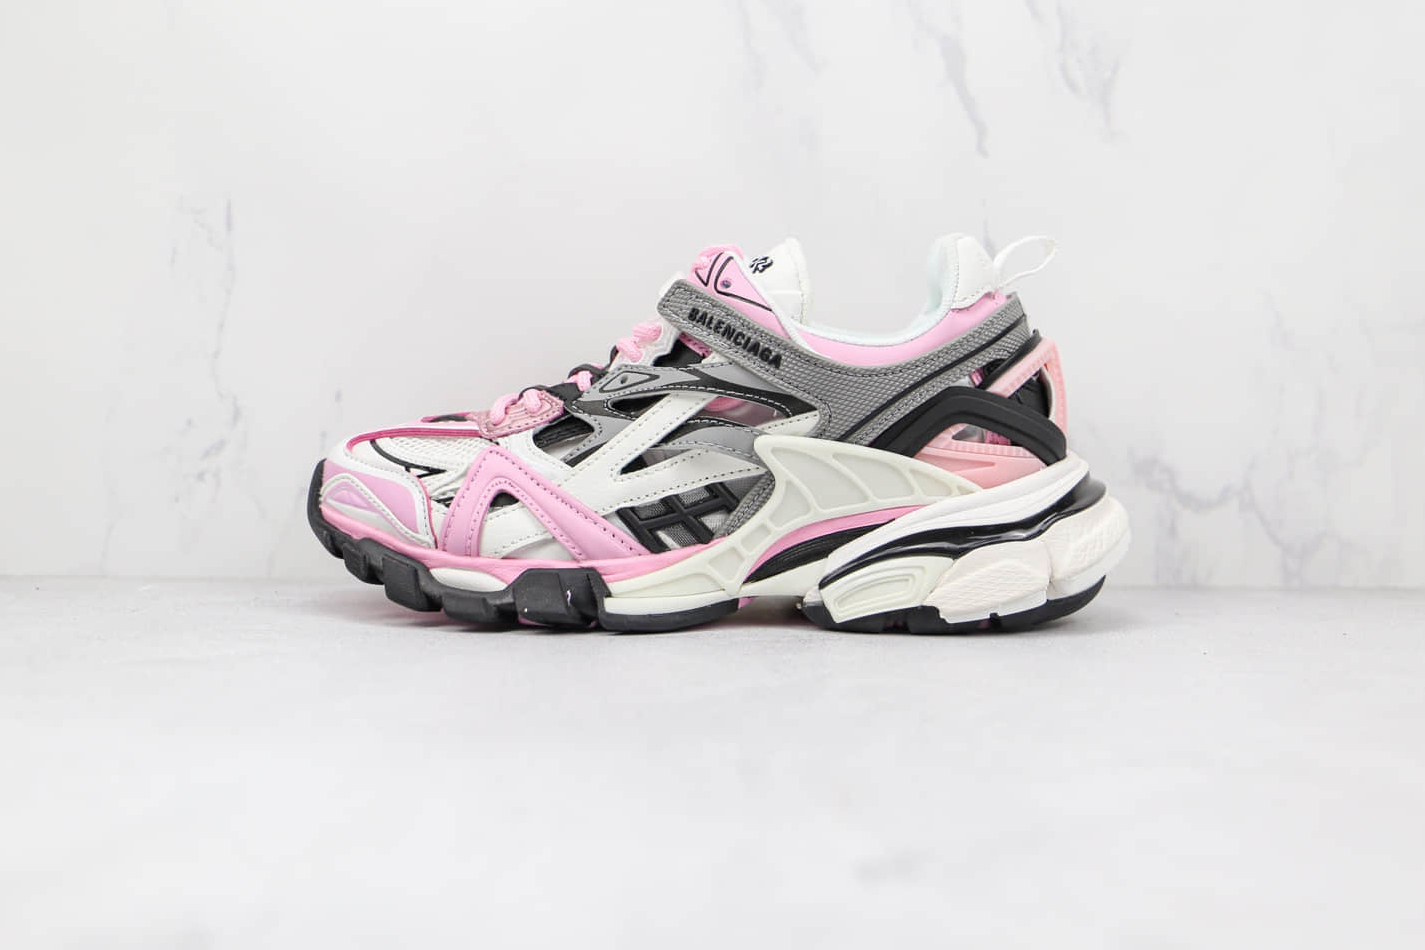 Balenciaga Track.2 Sneaker 'Pink' 568615W3AE25291 - Limited Edition Fashion Footwear